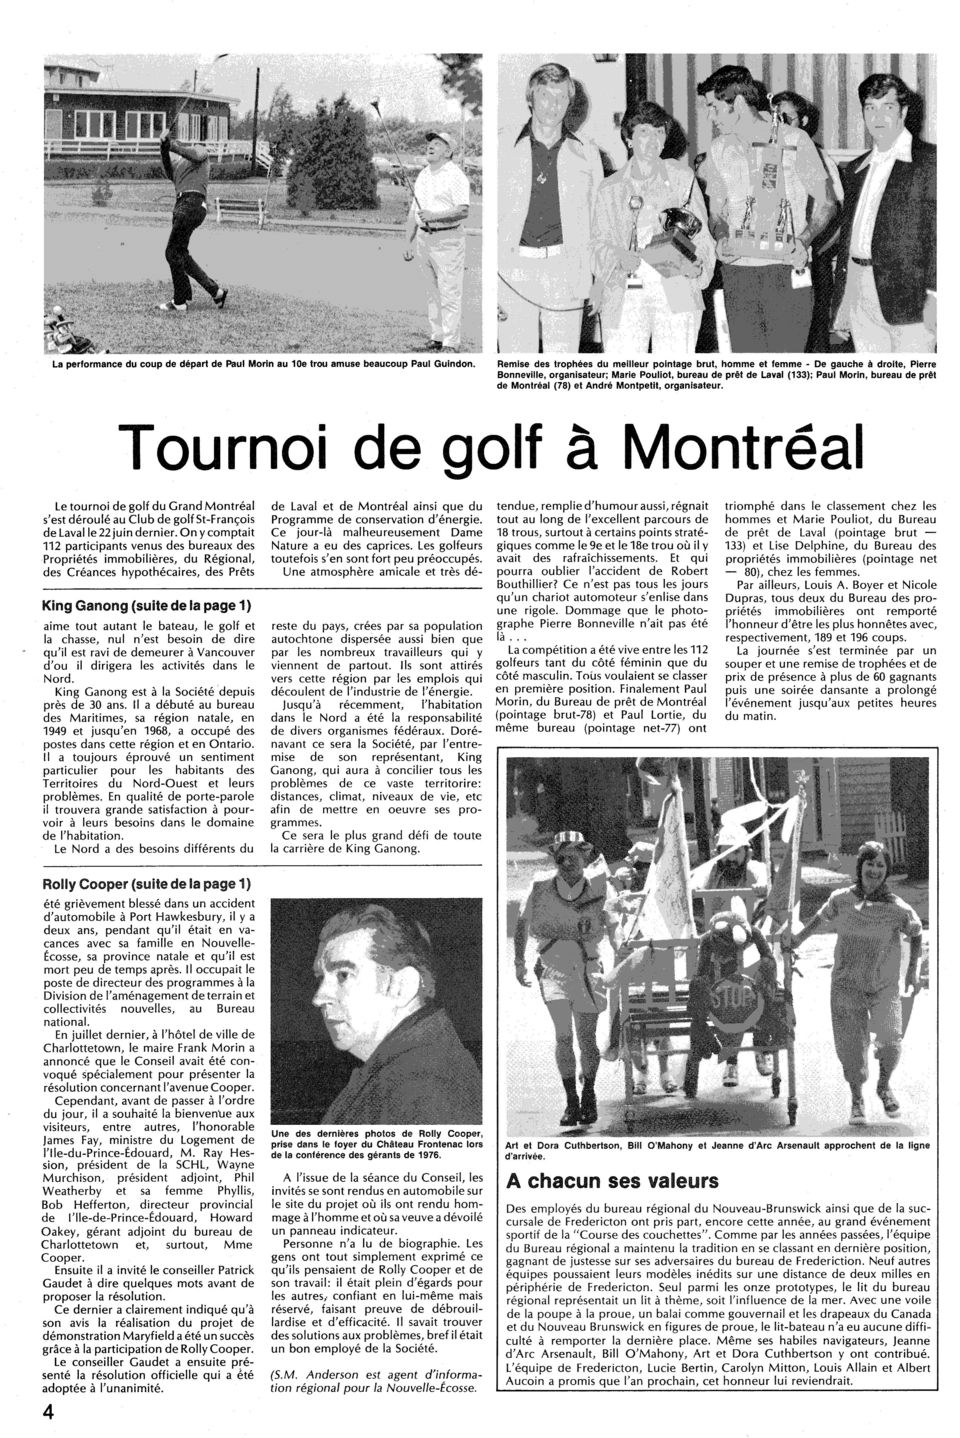 Montreal (78) et Andre Montpetlt, organlsateur. T OU rnoi de golf a Montreal le tournoi de golf du Grand Montreal s'est deroule au Club de golf St-Fran~ois de laval Ie 22 juin dernier.